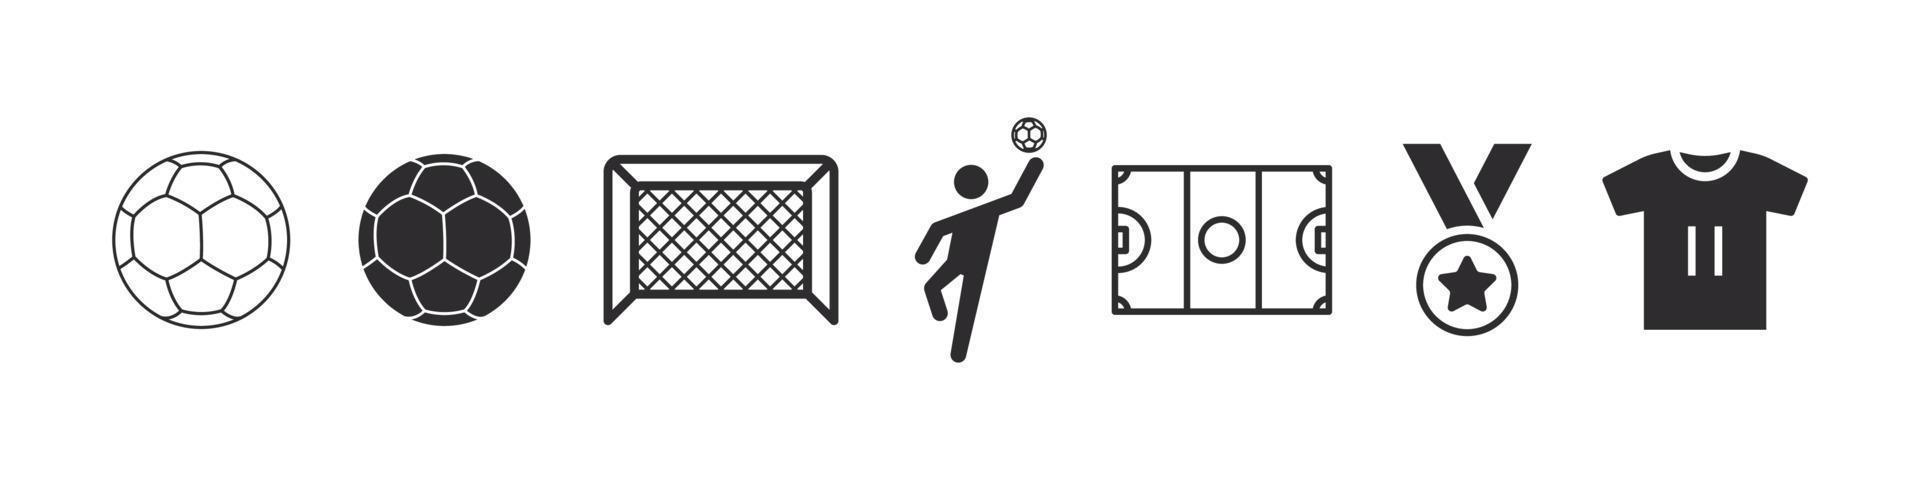 handboll ikoner. sporter ikoner i enkel stil. handboll element för design. vektor ikoner